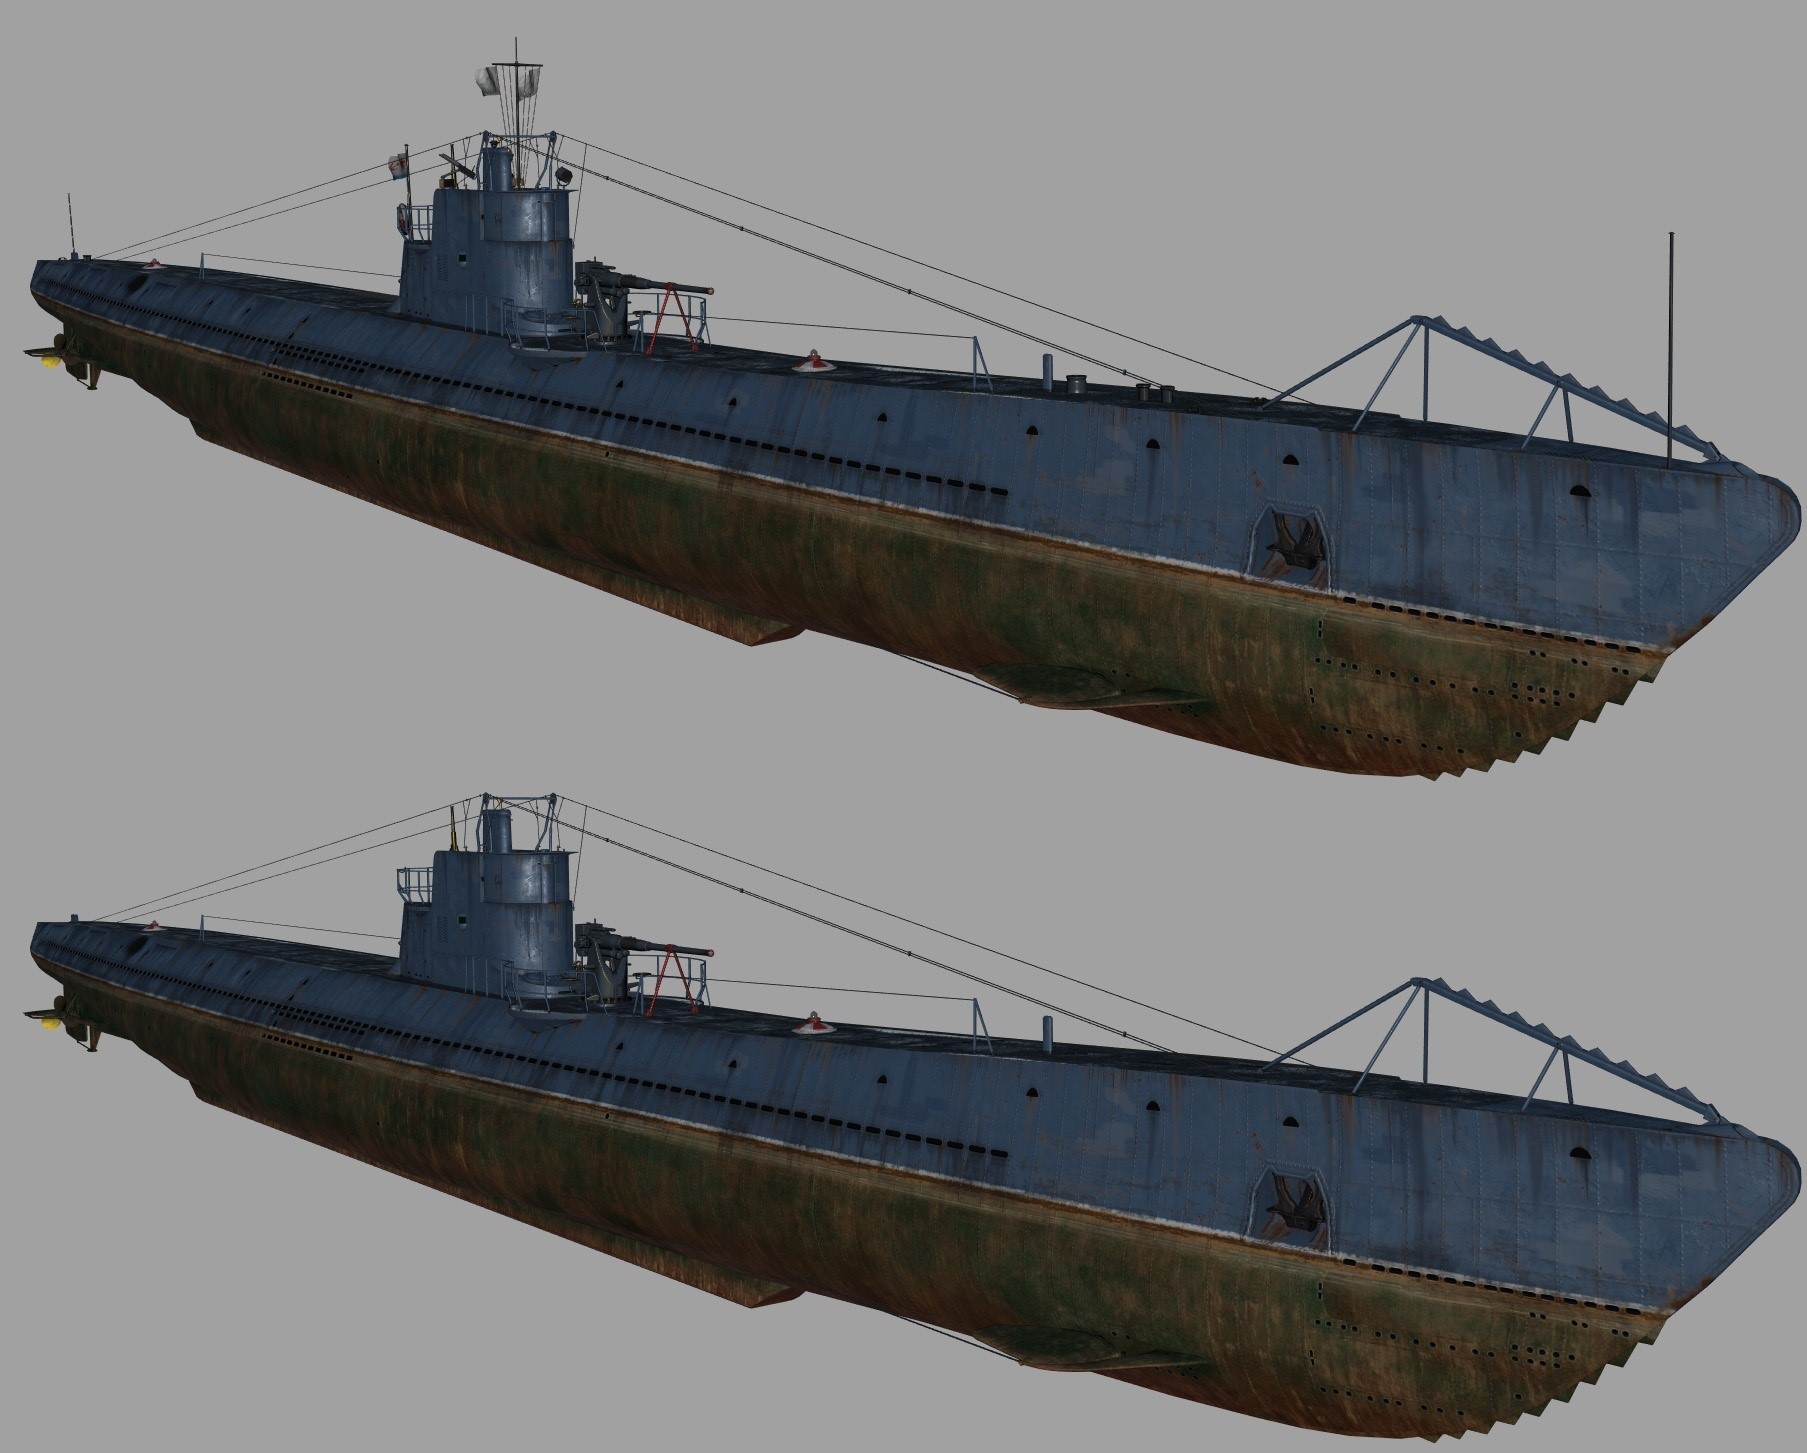 Как создавались подводные лодки для World of Warships